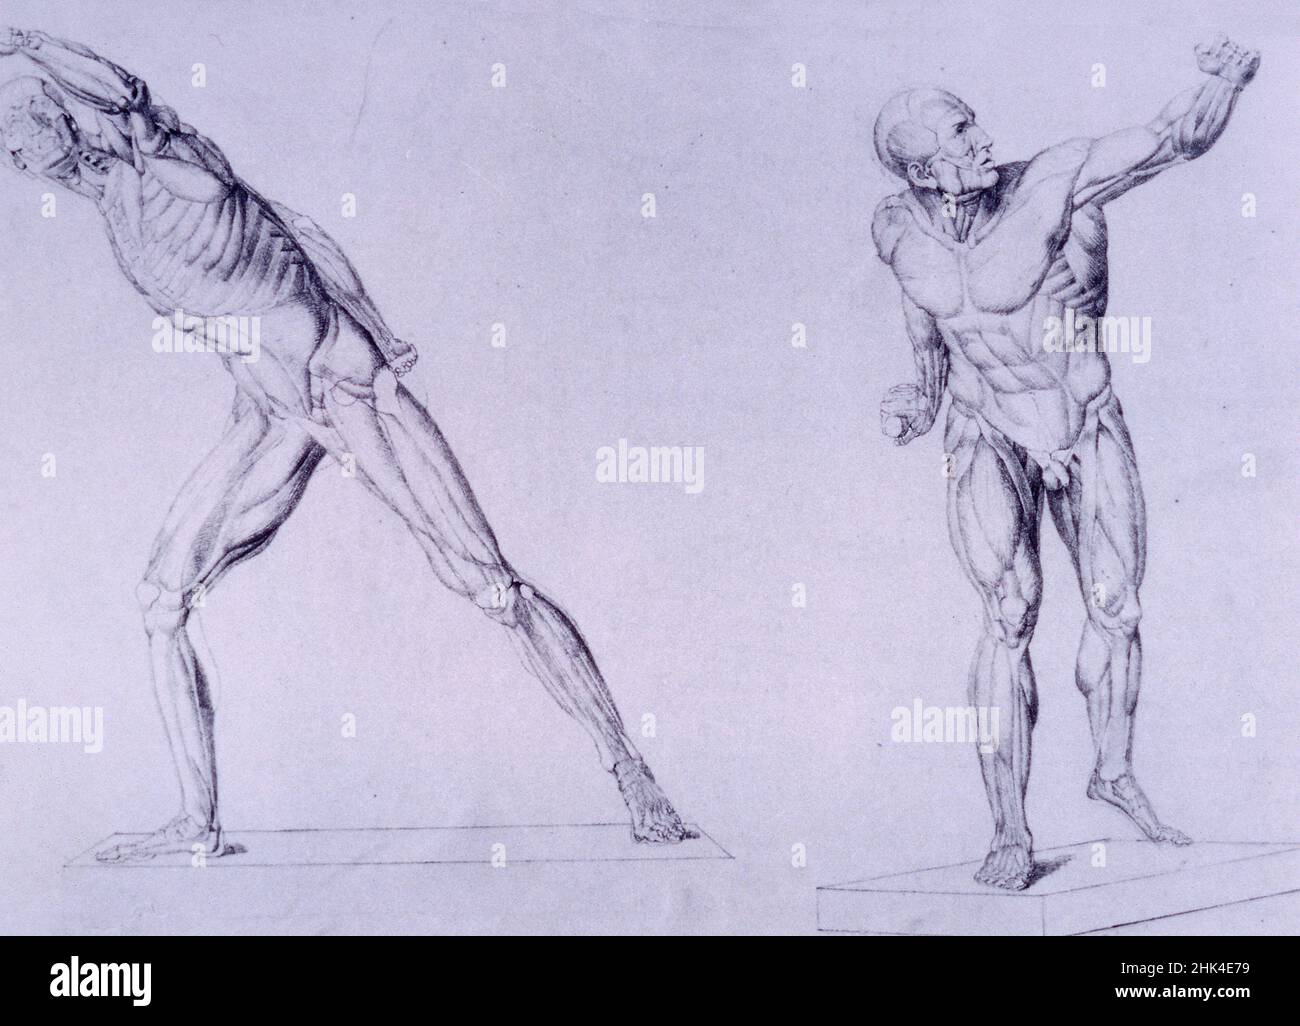 Dessins anatomiques de l'artiste français Alphonse Perrin, 1900s Banque D'Images